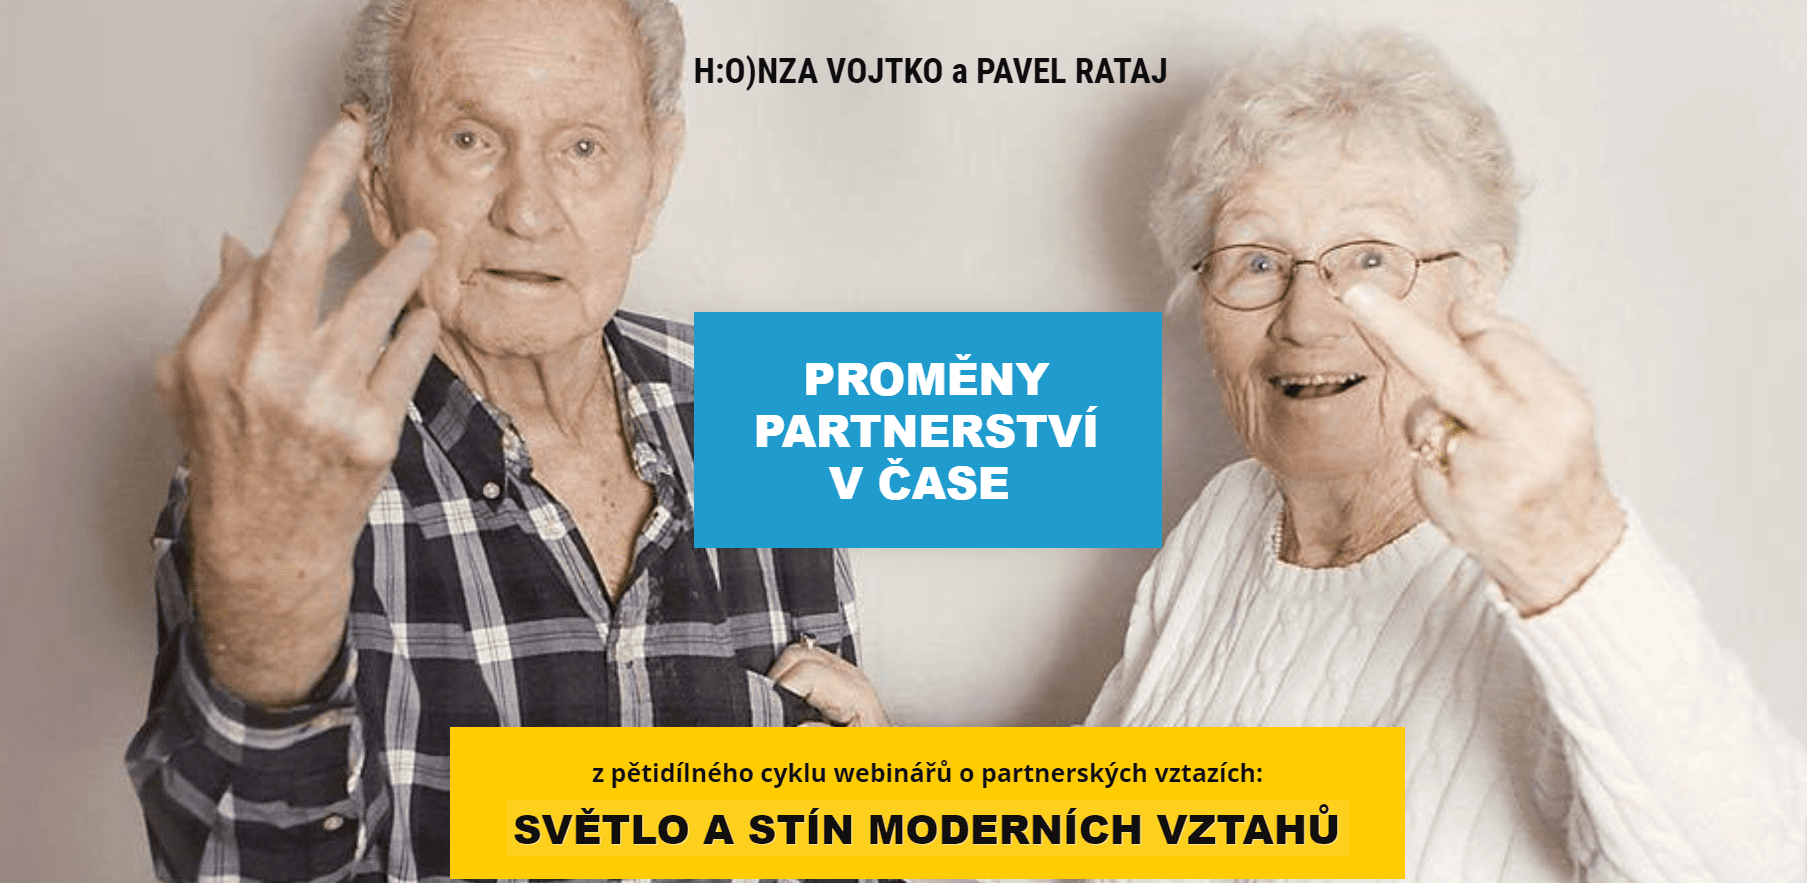 1. Proměny partnerství čitý - Pavel Rataj a Honza Vojtko